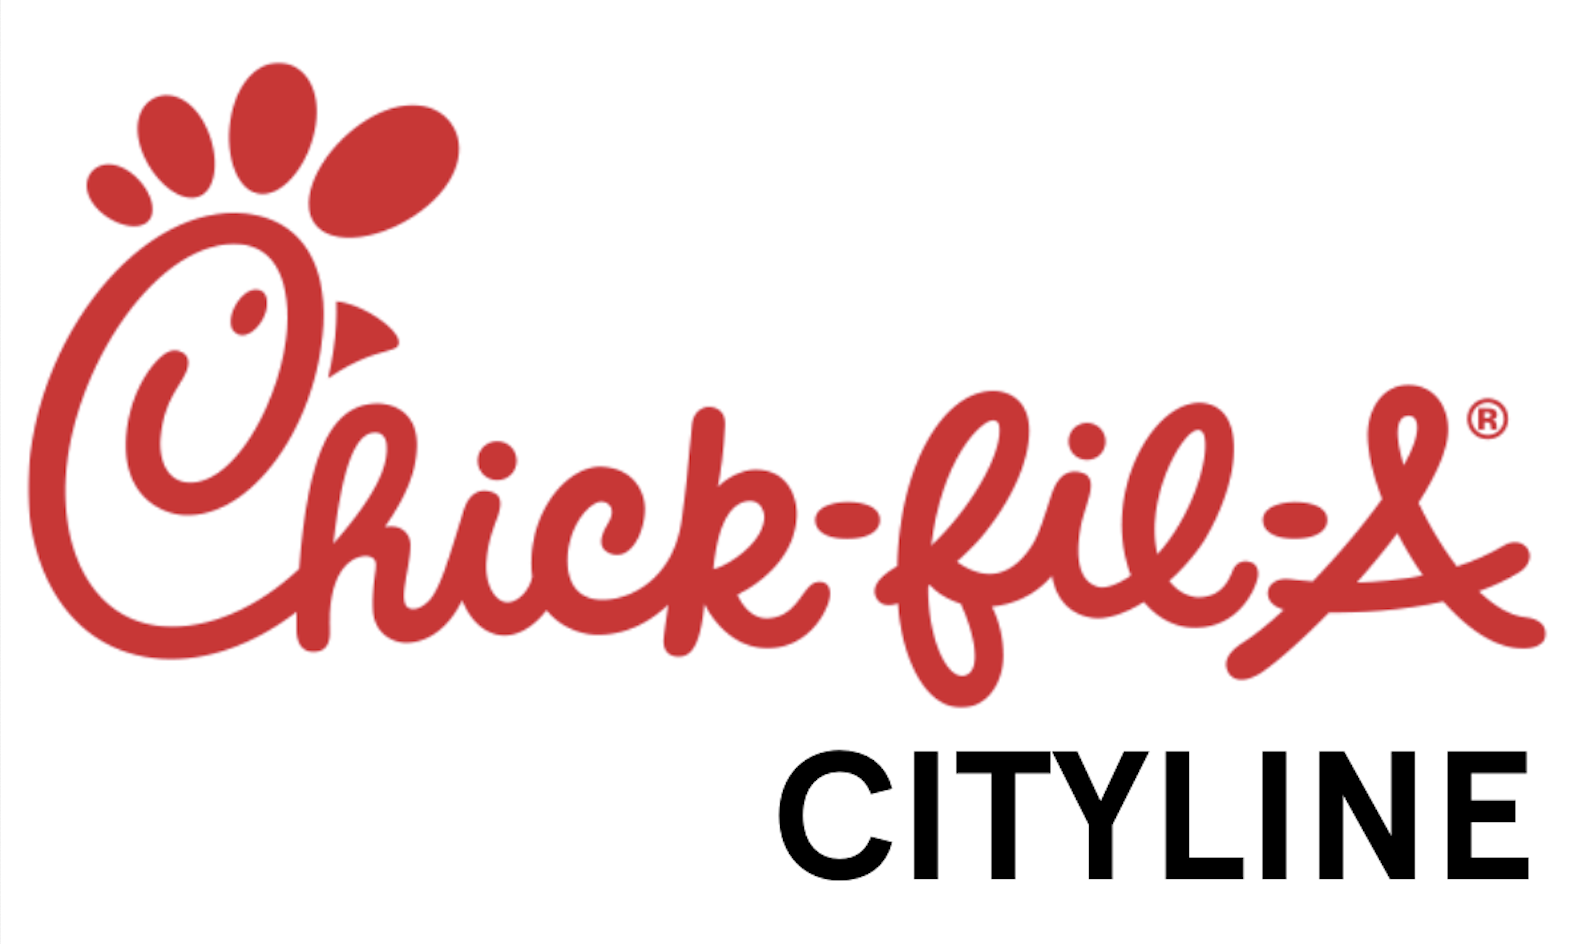 Chickfila Cityline